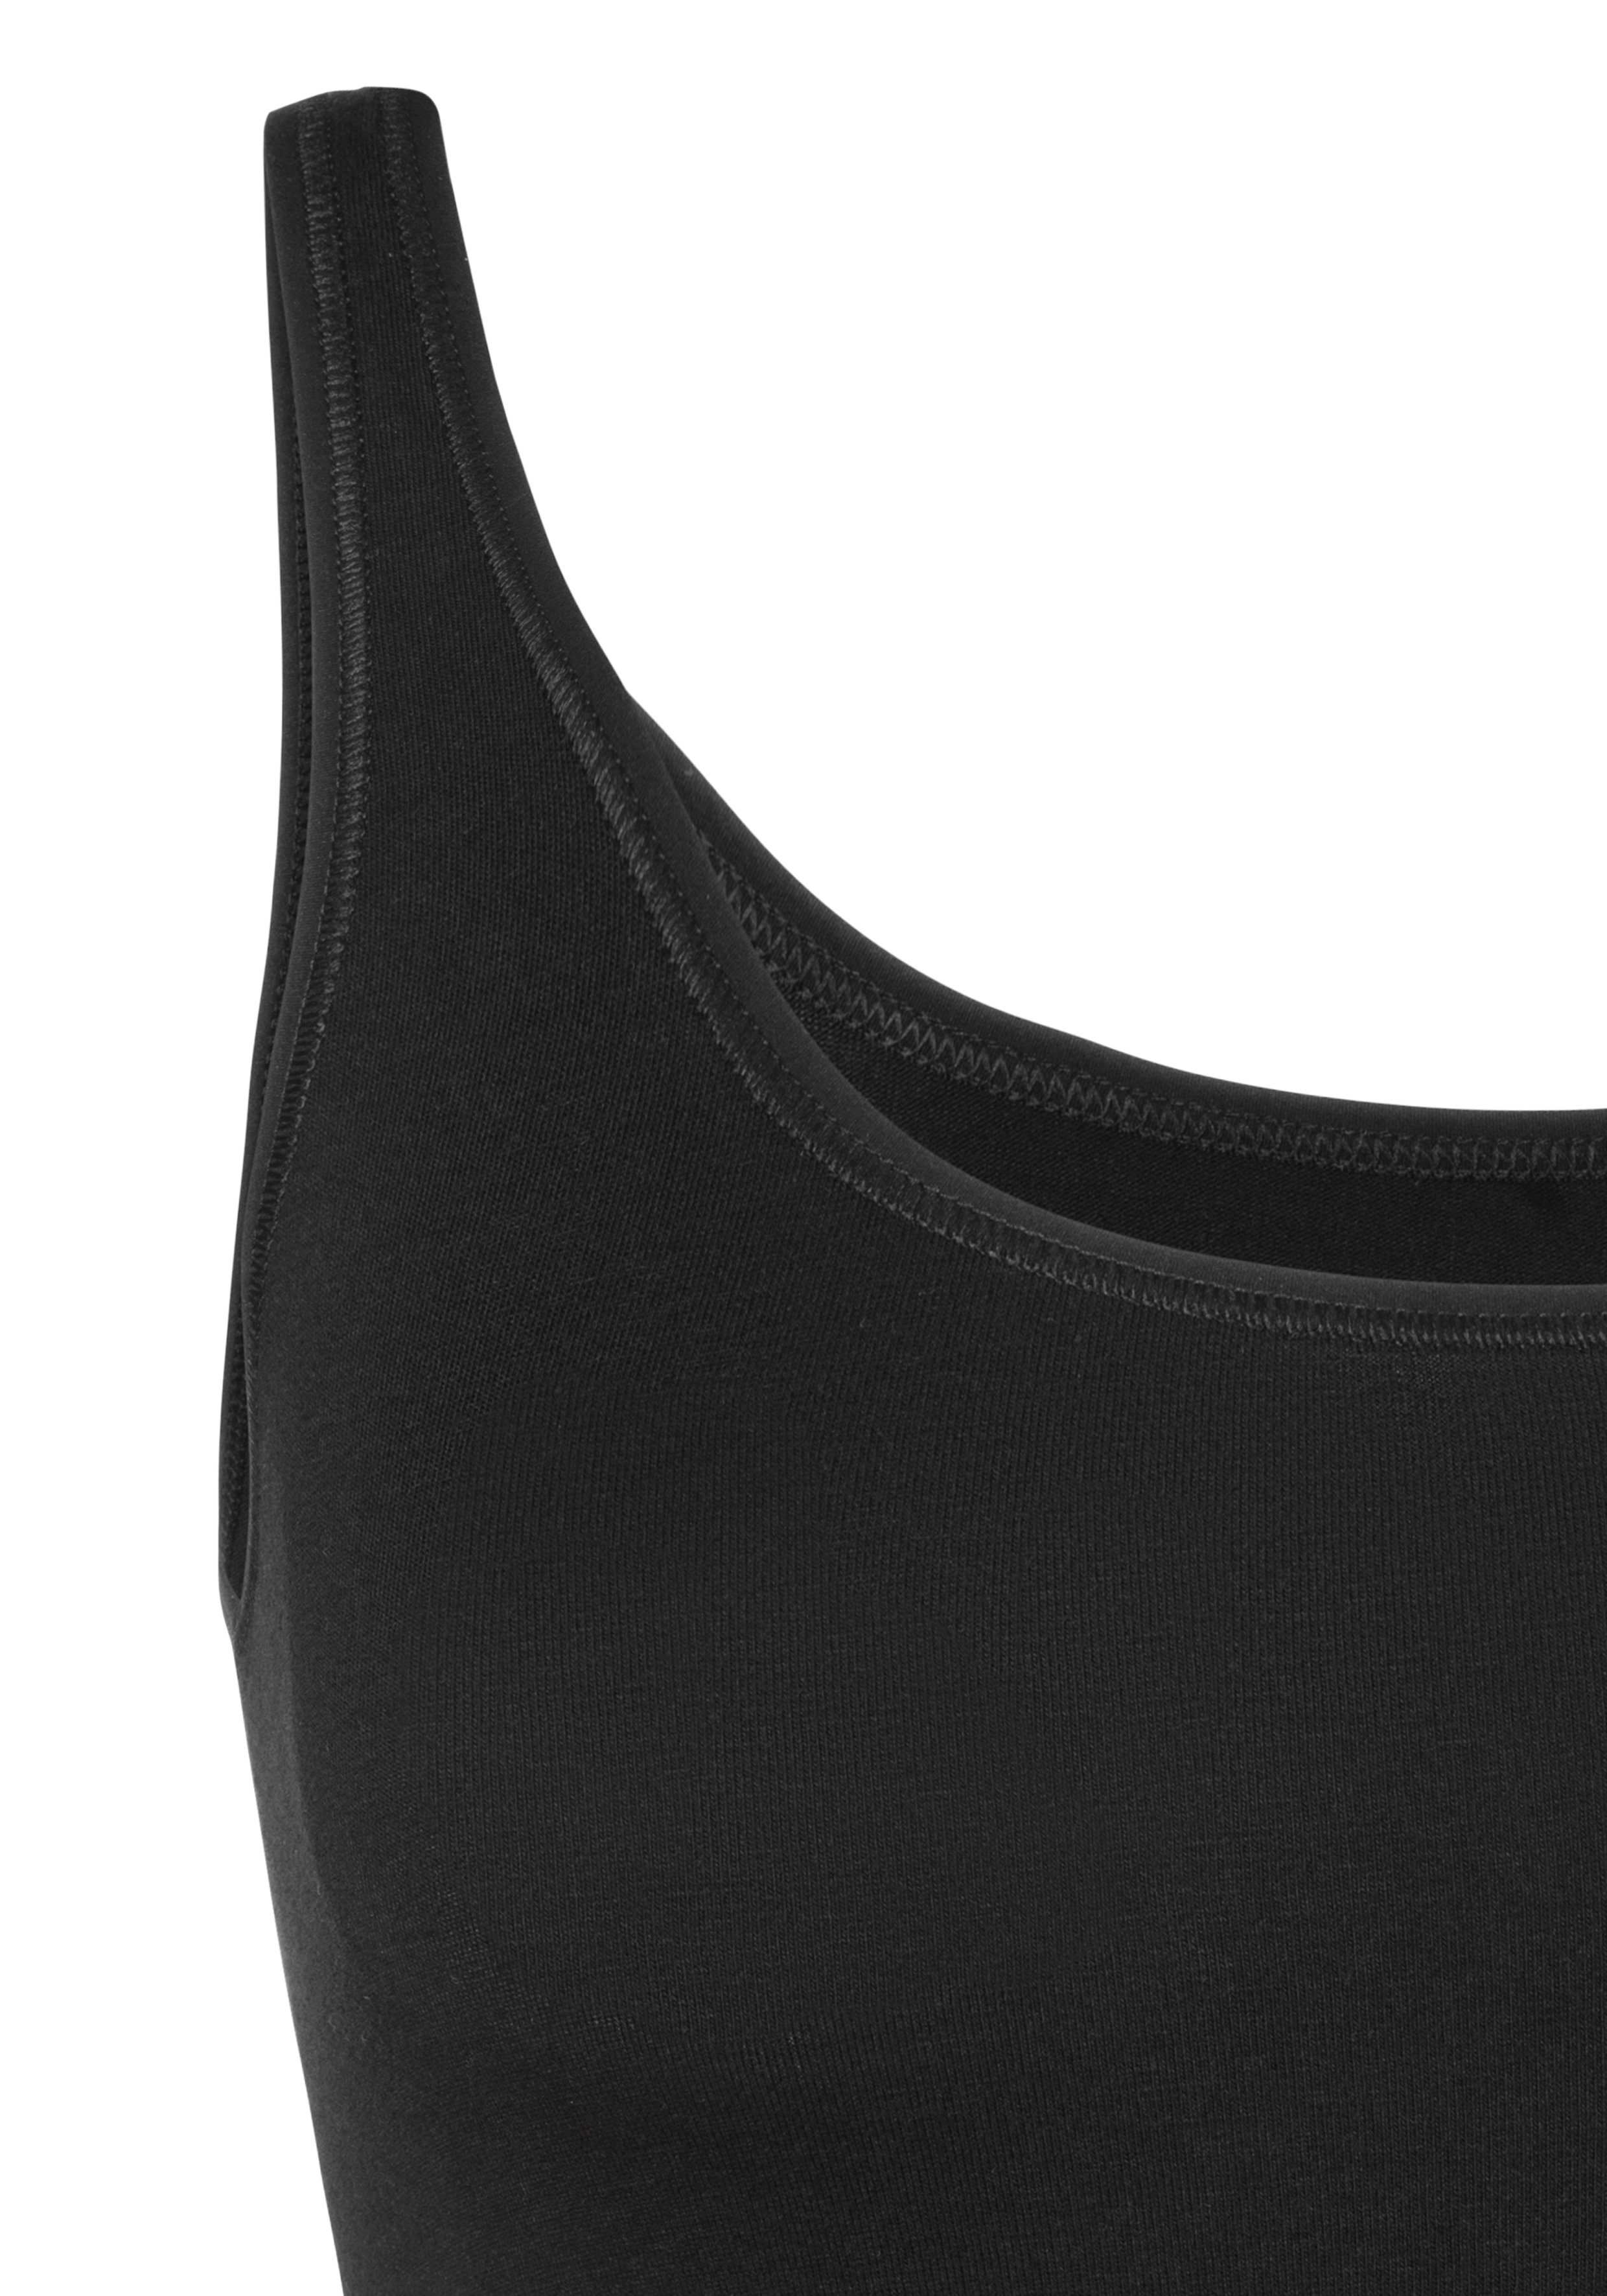 Schiesser Unterhemd elastischer mit Single-Jersey-Qualität schwarz/sand (2er-Pack)